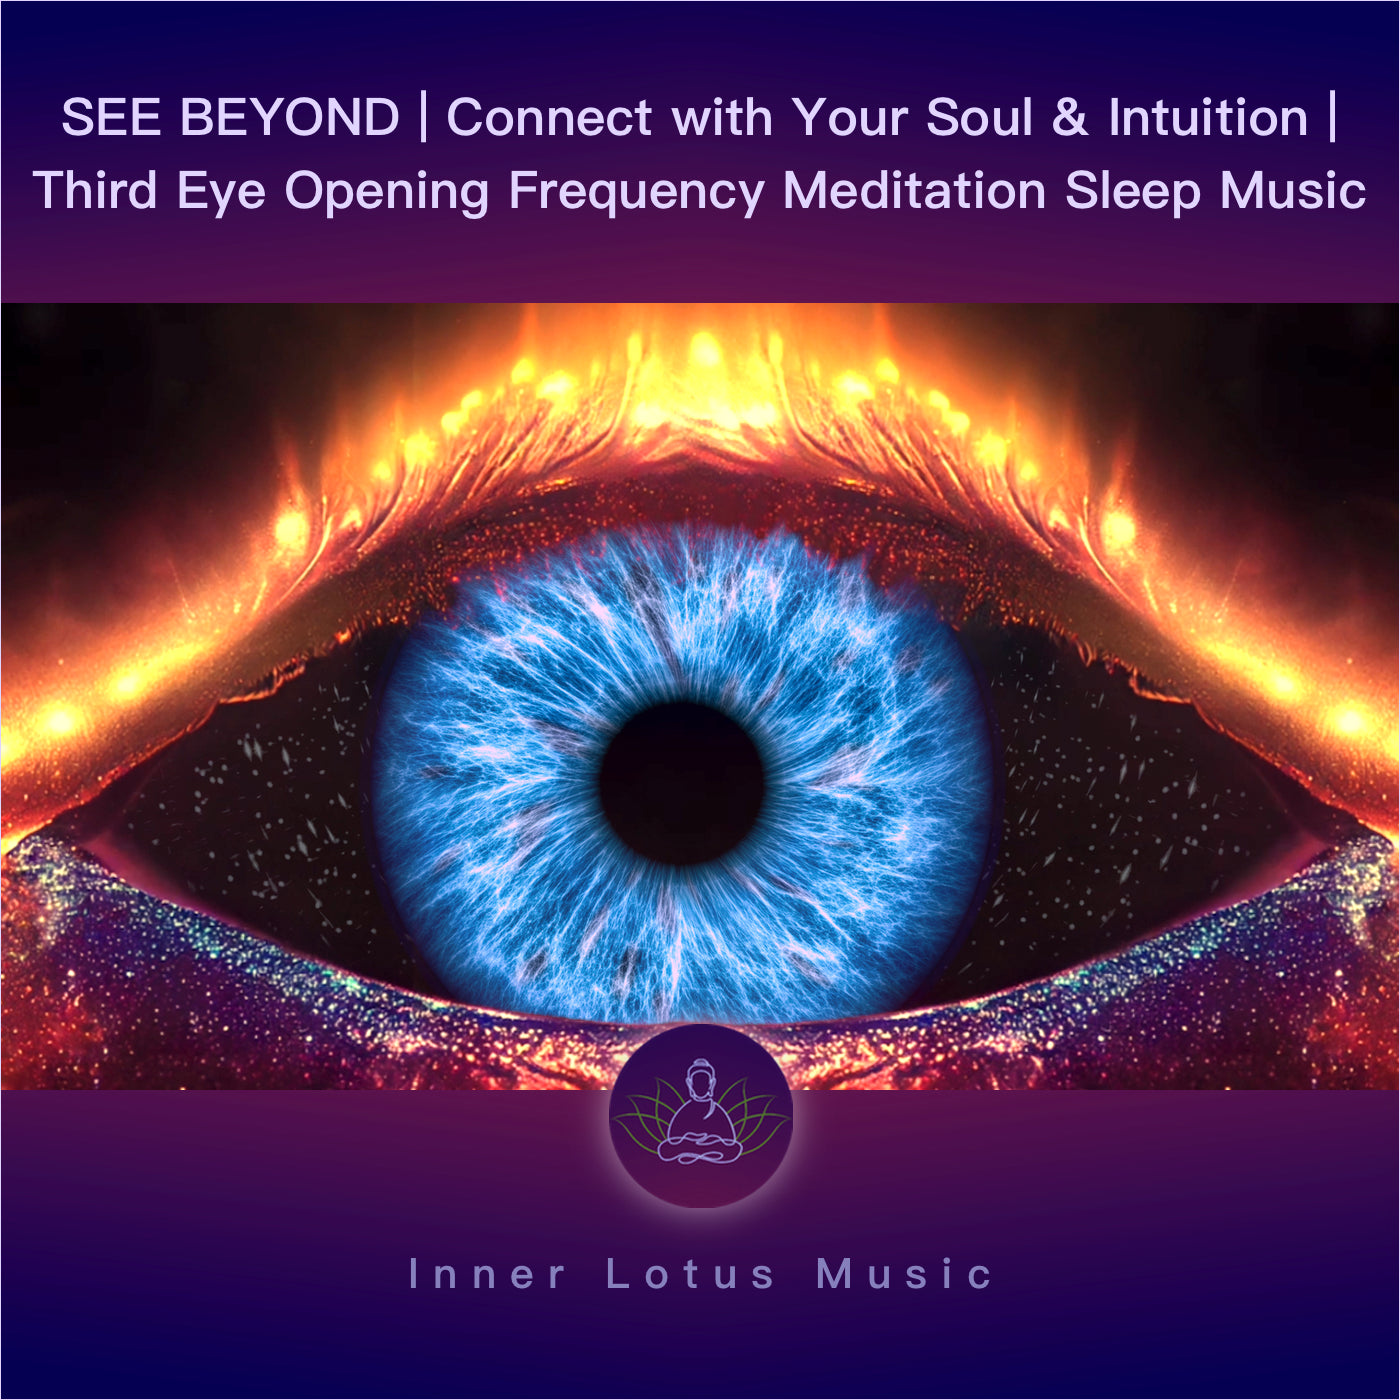 Ver Más Allá | Conecta con tu Alma e Intuición | Música para el Chakra Tercer Ojo | Meditación Sueño